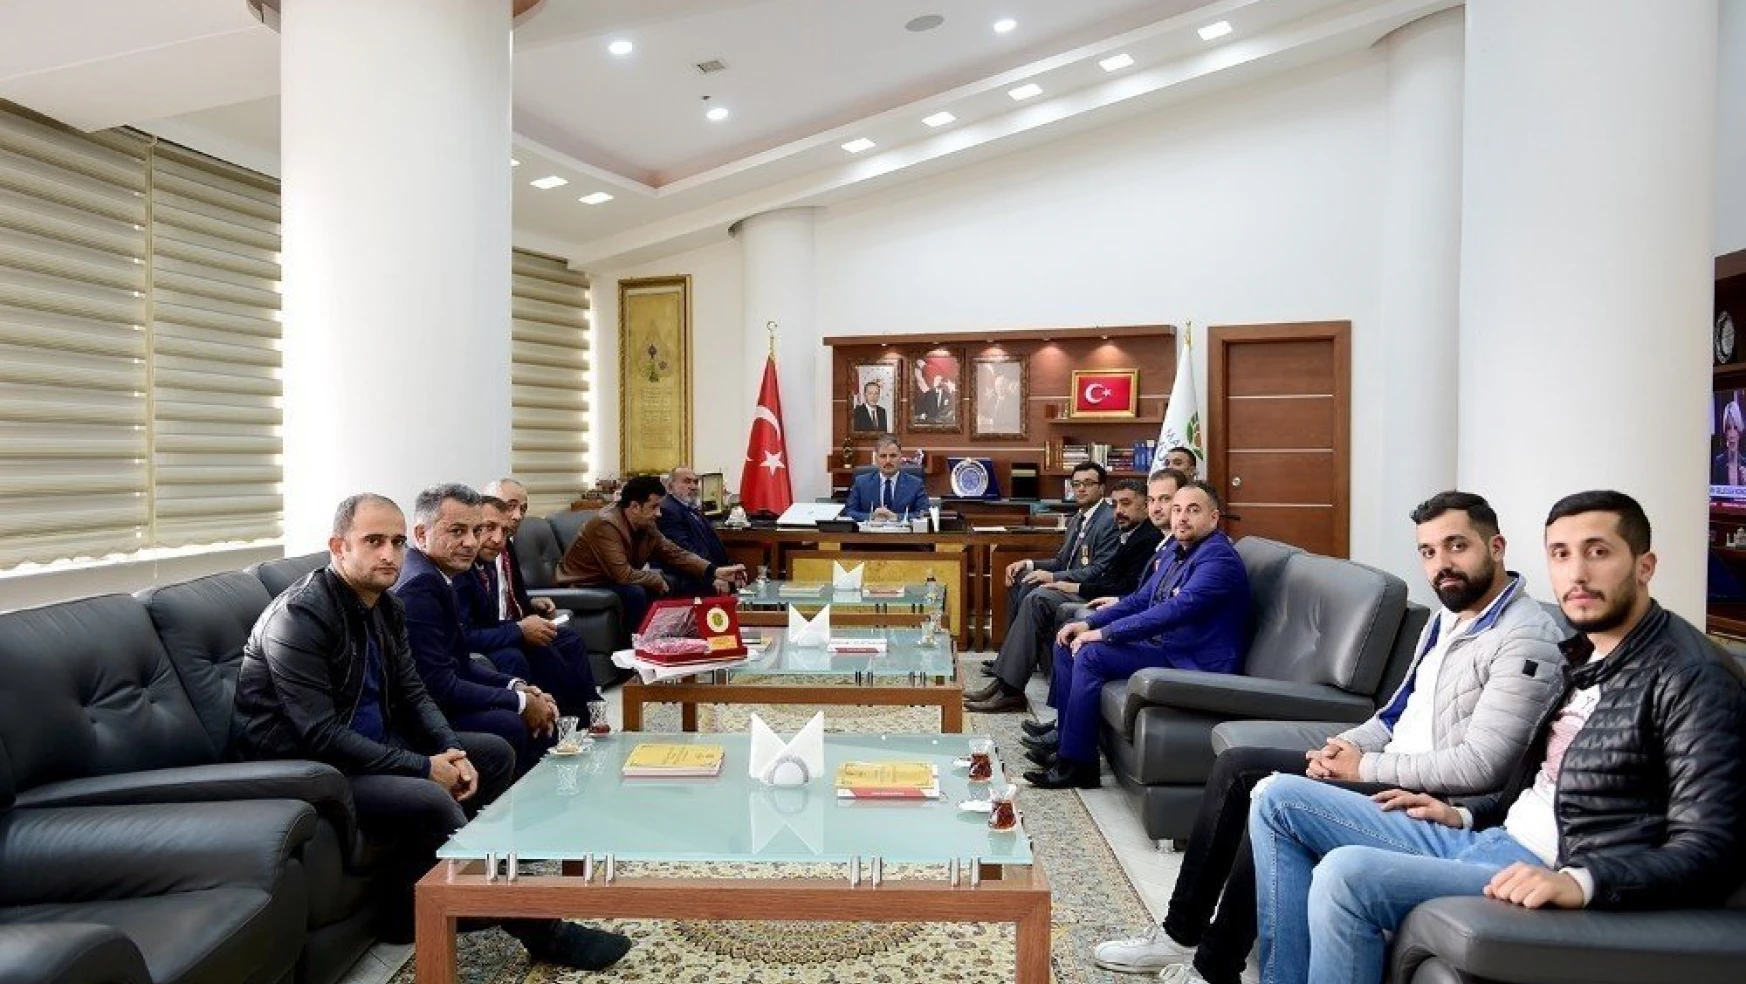 Büyükşehir Belediye Başkanı Ahmet Çakır:
